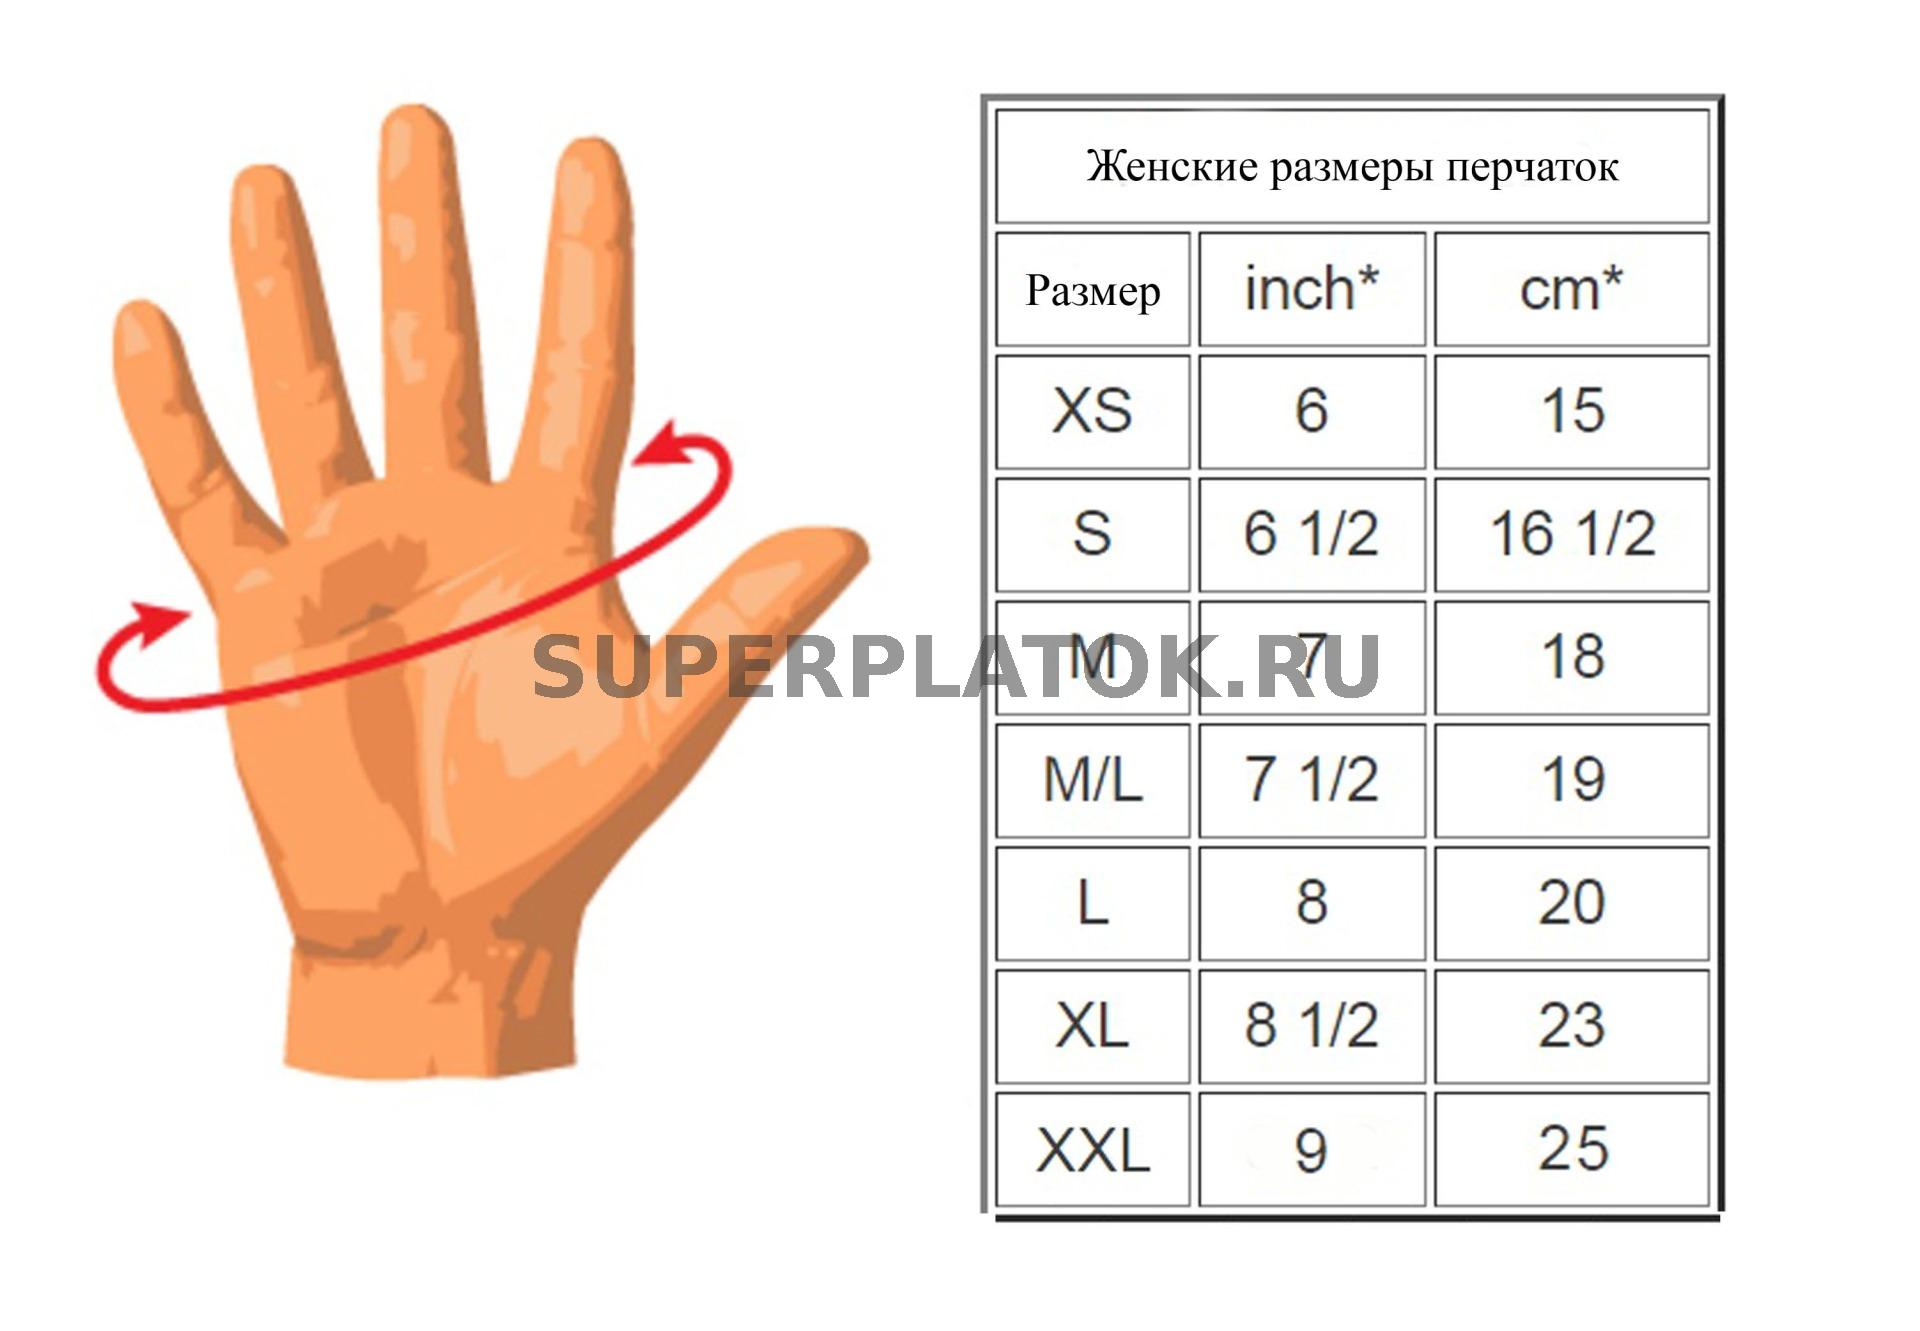 Перчатки какой руки. Размер перчатки (размер кисти) 8 дюйм. Размерная сетка женских перчаток кожаных. Размер перчаток 8 это какой размер женский. Размер перчаток 6-7.